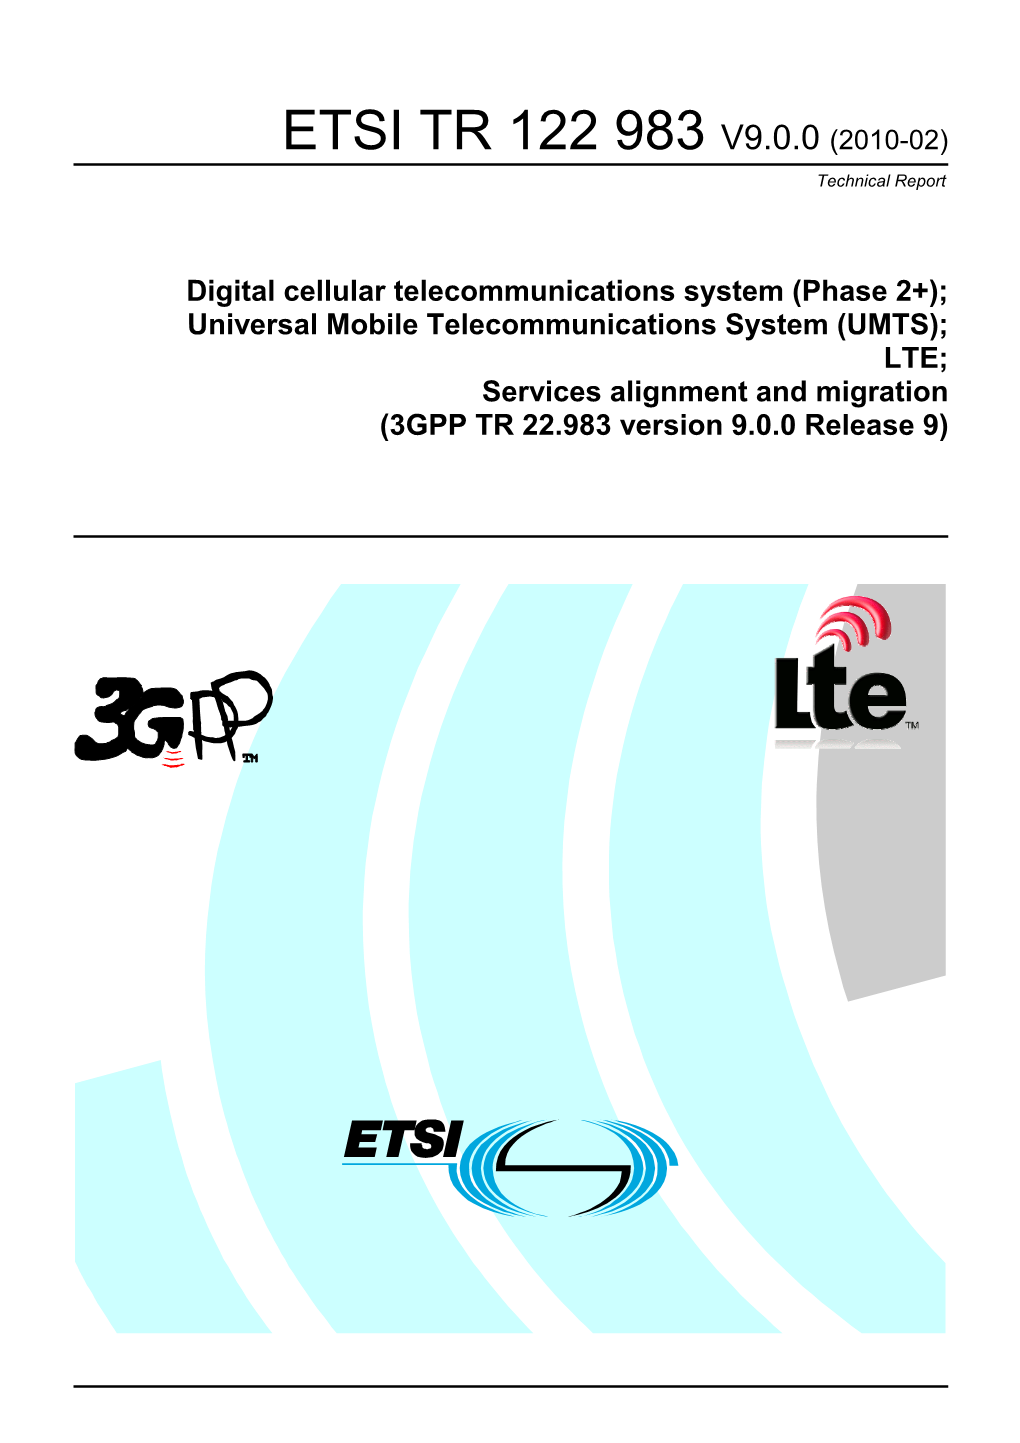 ETSI TR 122 983 V9.0.0 (2010-02) Technical Report